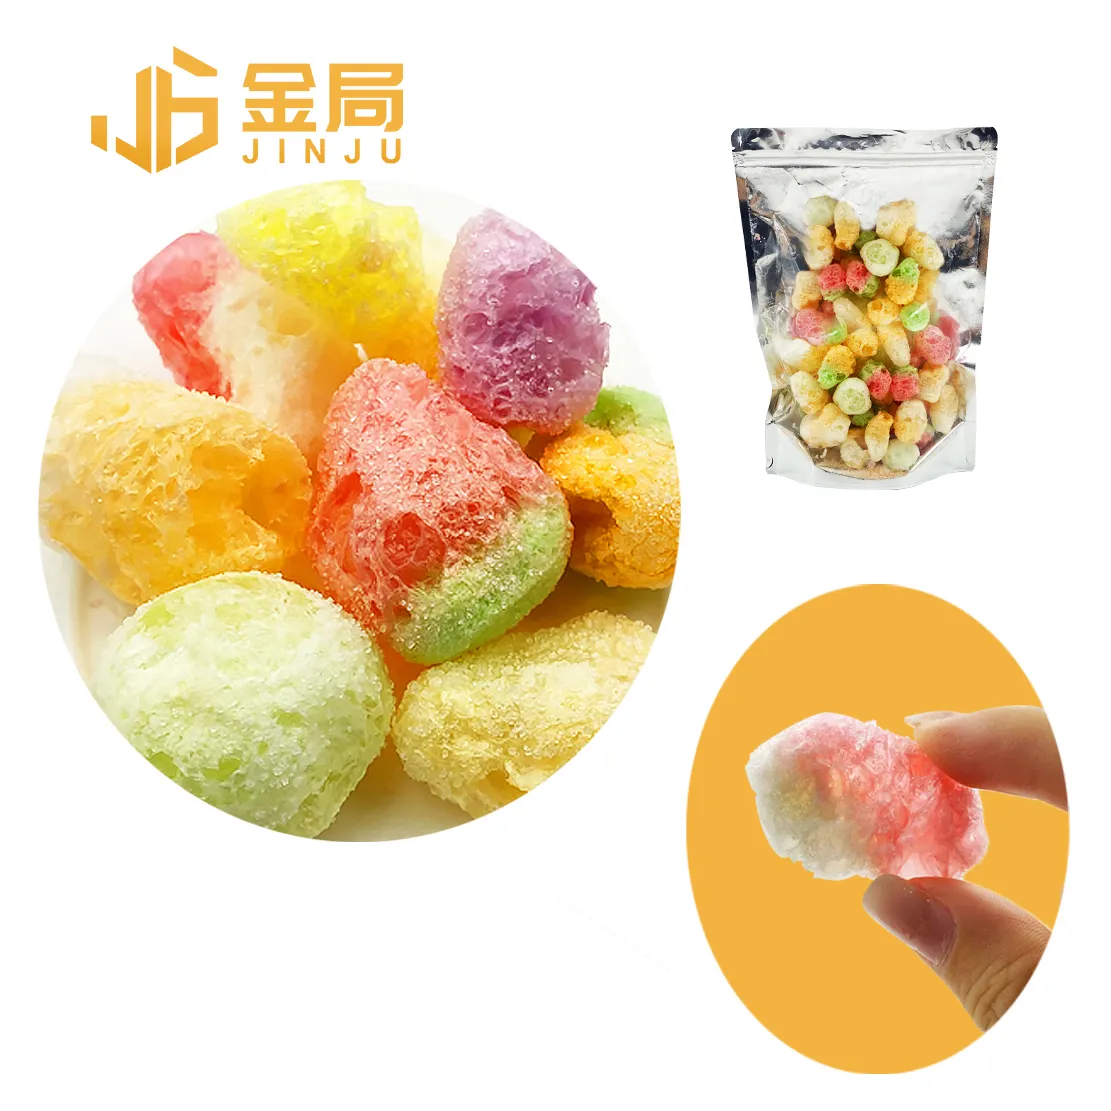 كرات الوجبات الخفيفة المجففة المجمدة بكميات كبيرة من الشركات المصنعة للحلوى اليابانية ، حلوى مجففة مجمدة